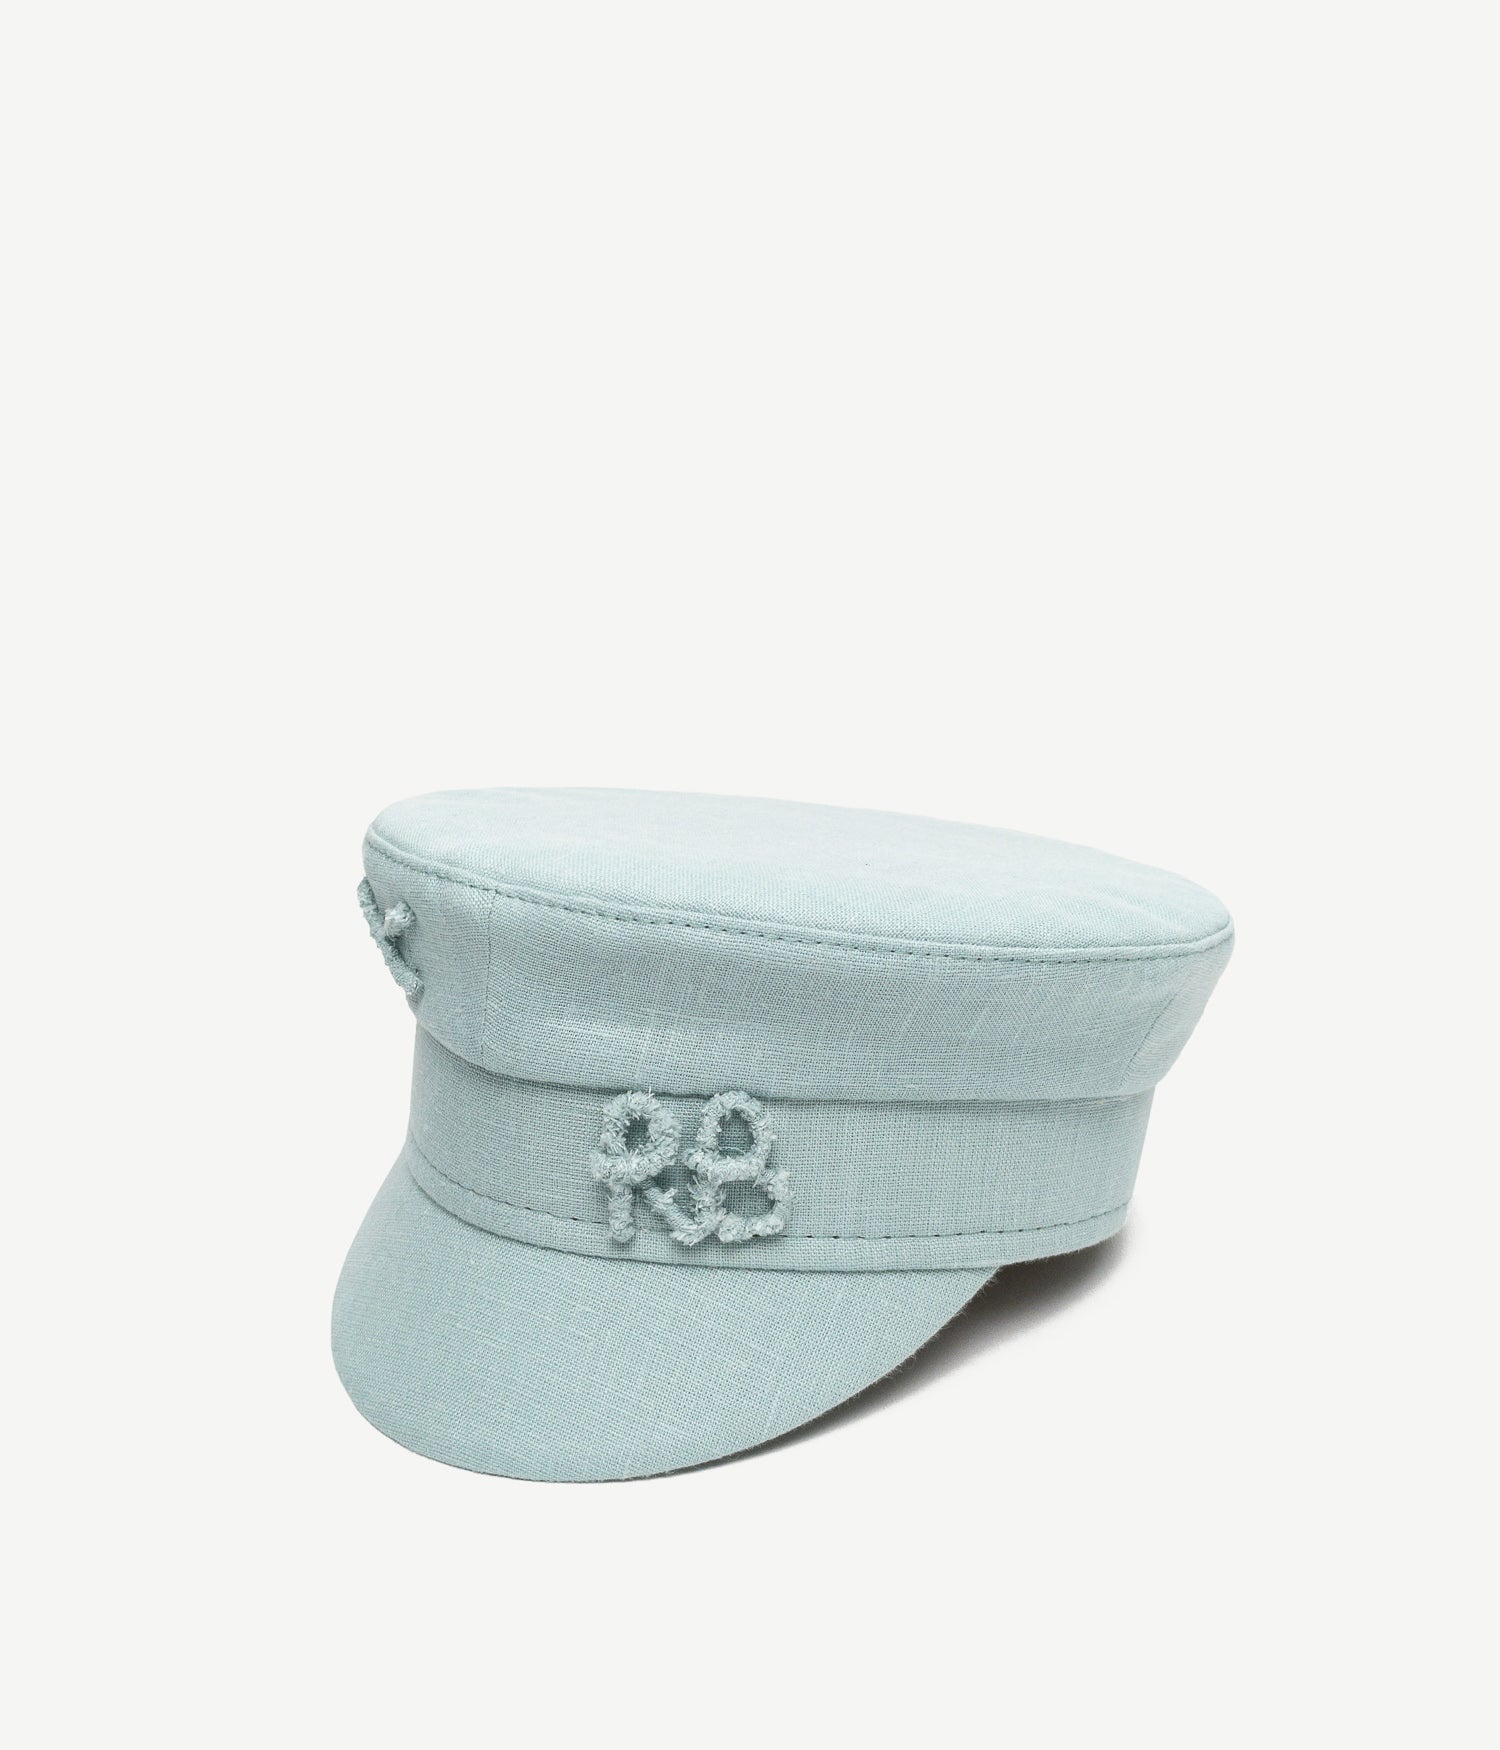 Monogram-embellished Linen Baker Boy Cap